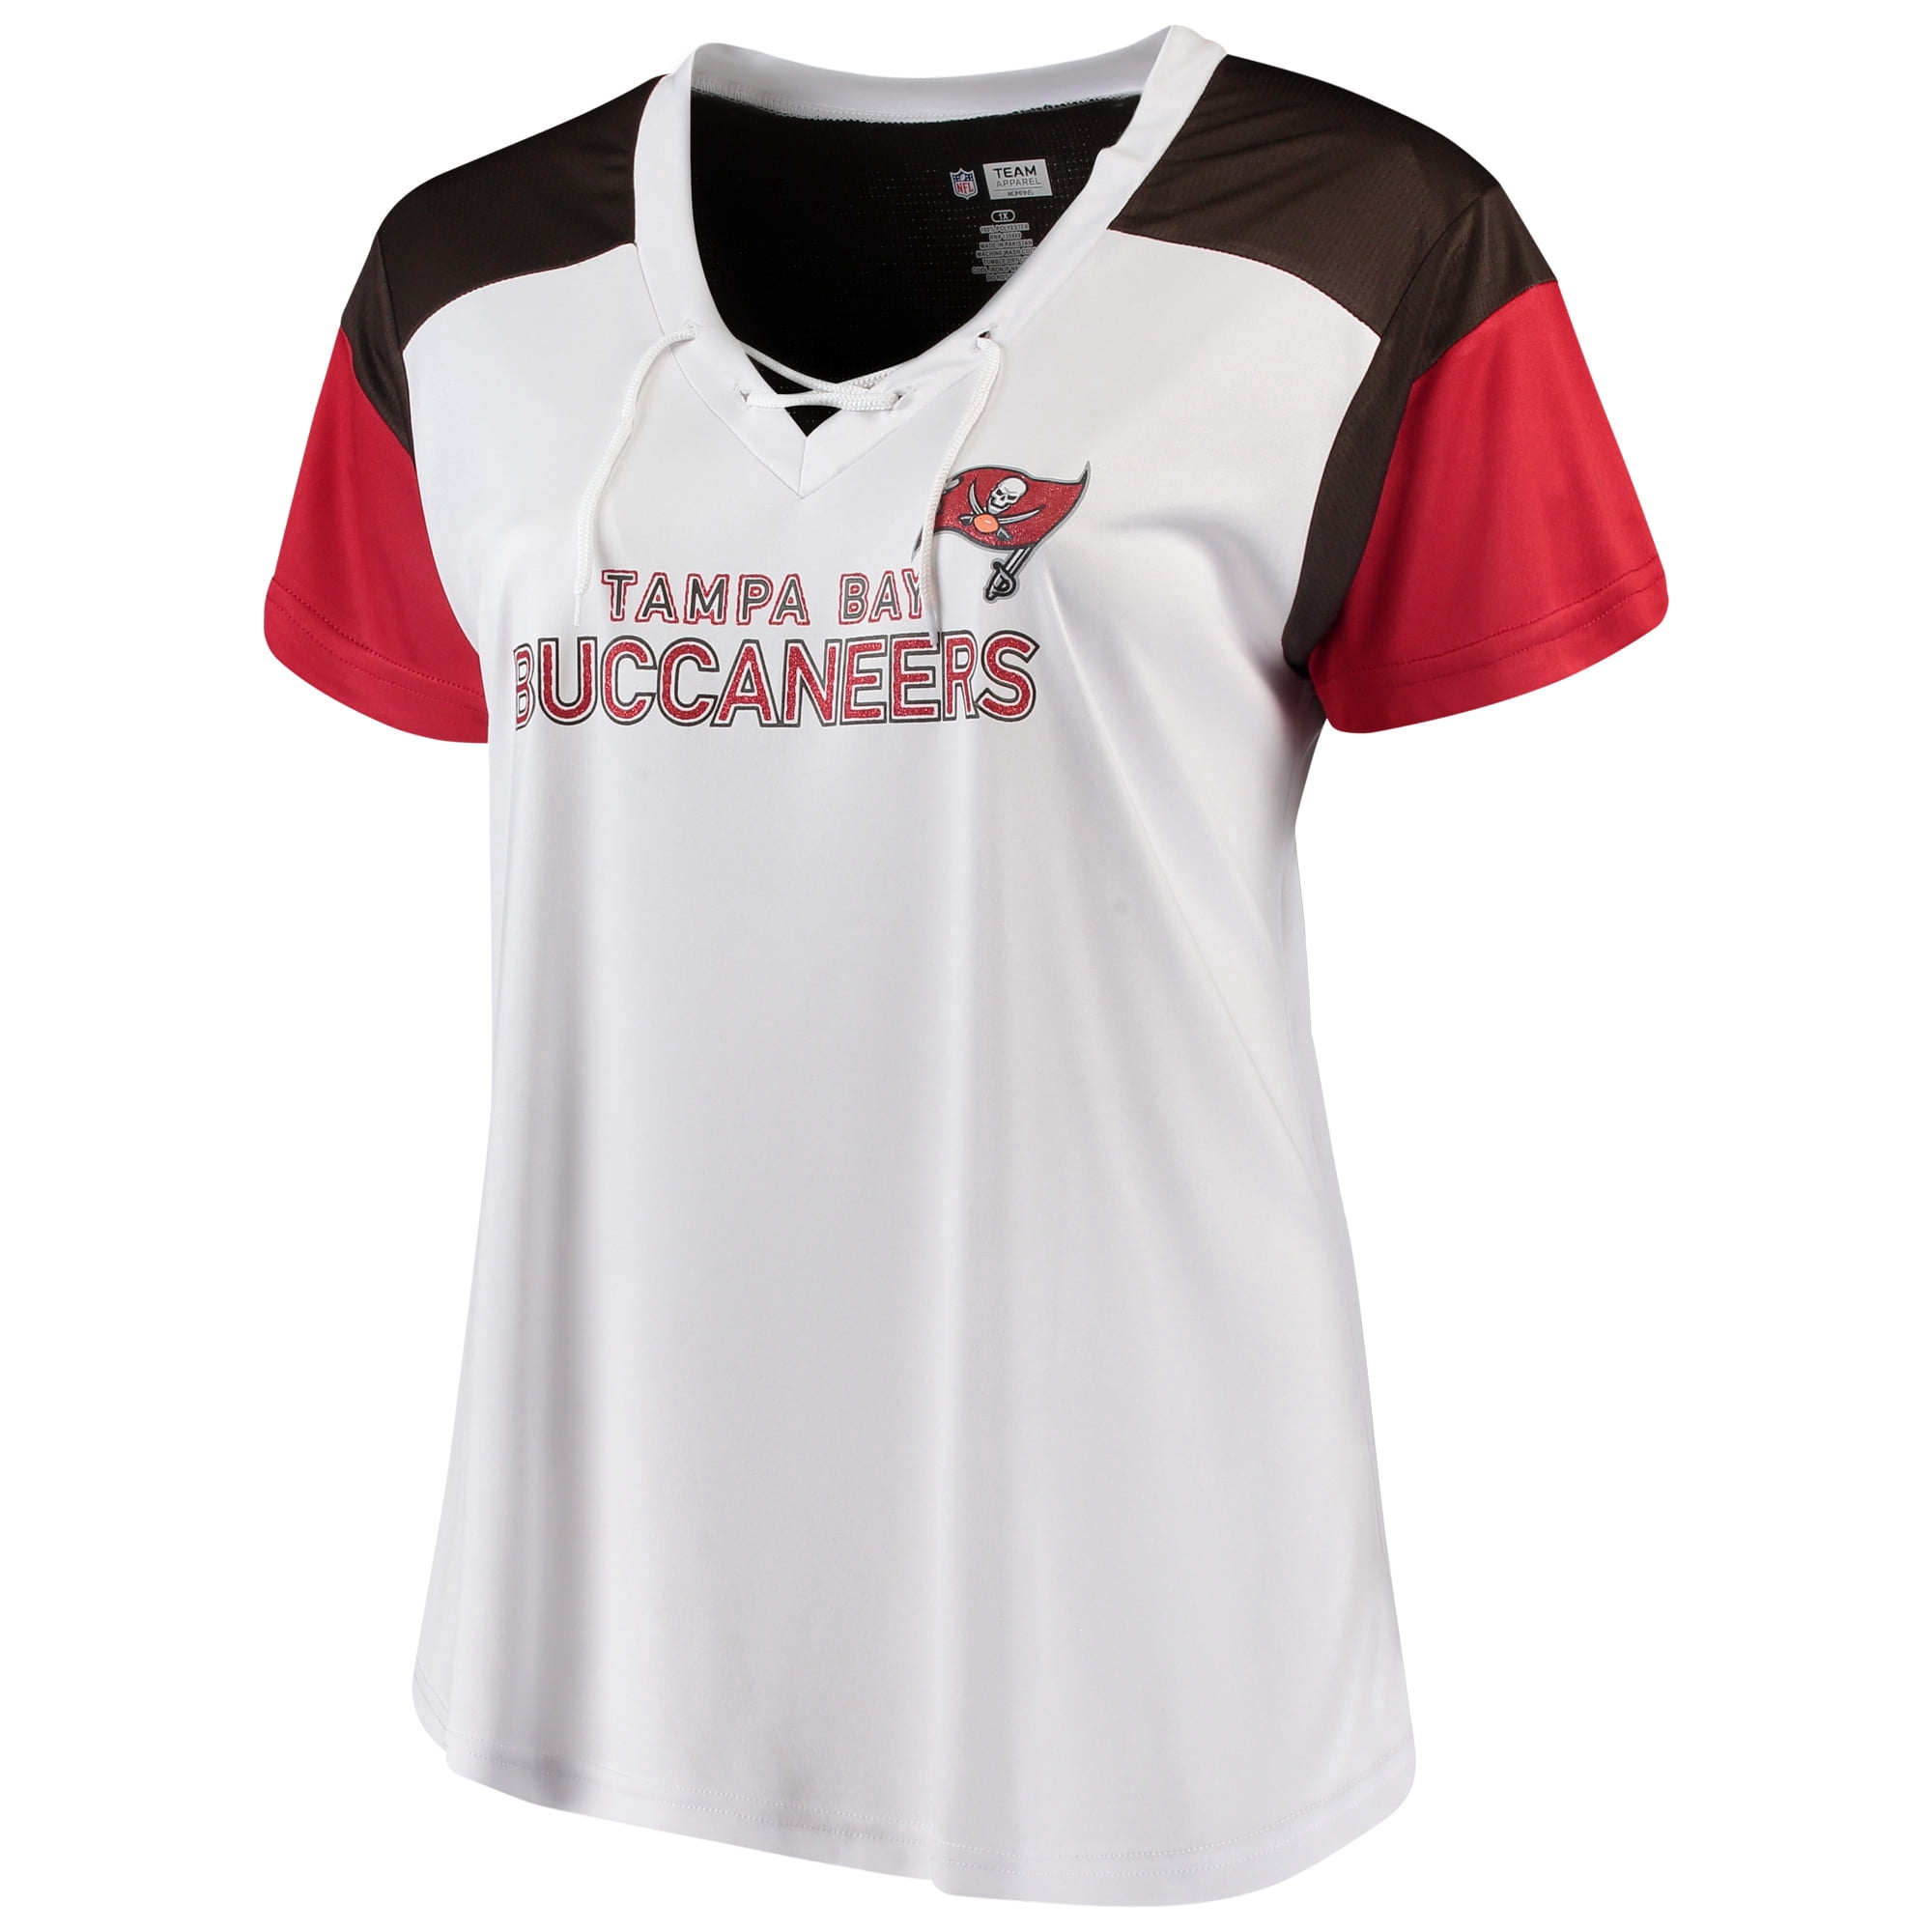 buccaneers shirt women's